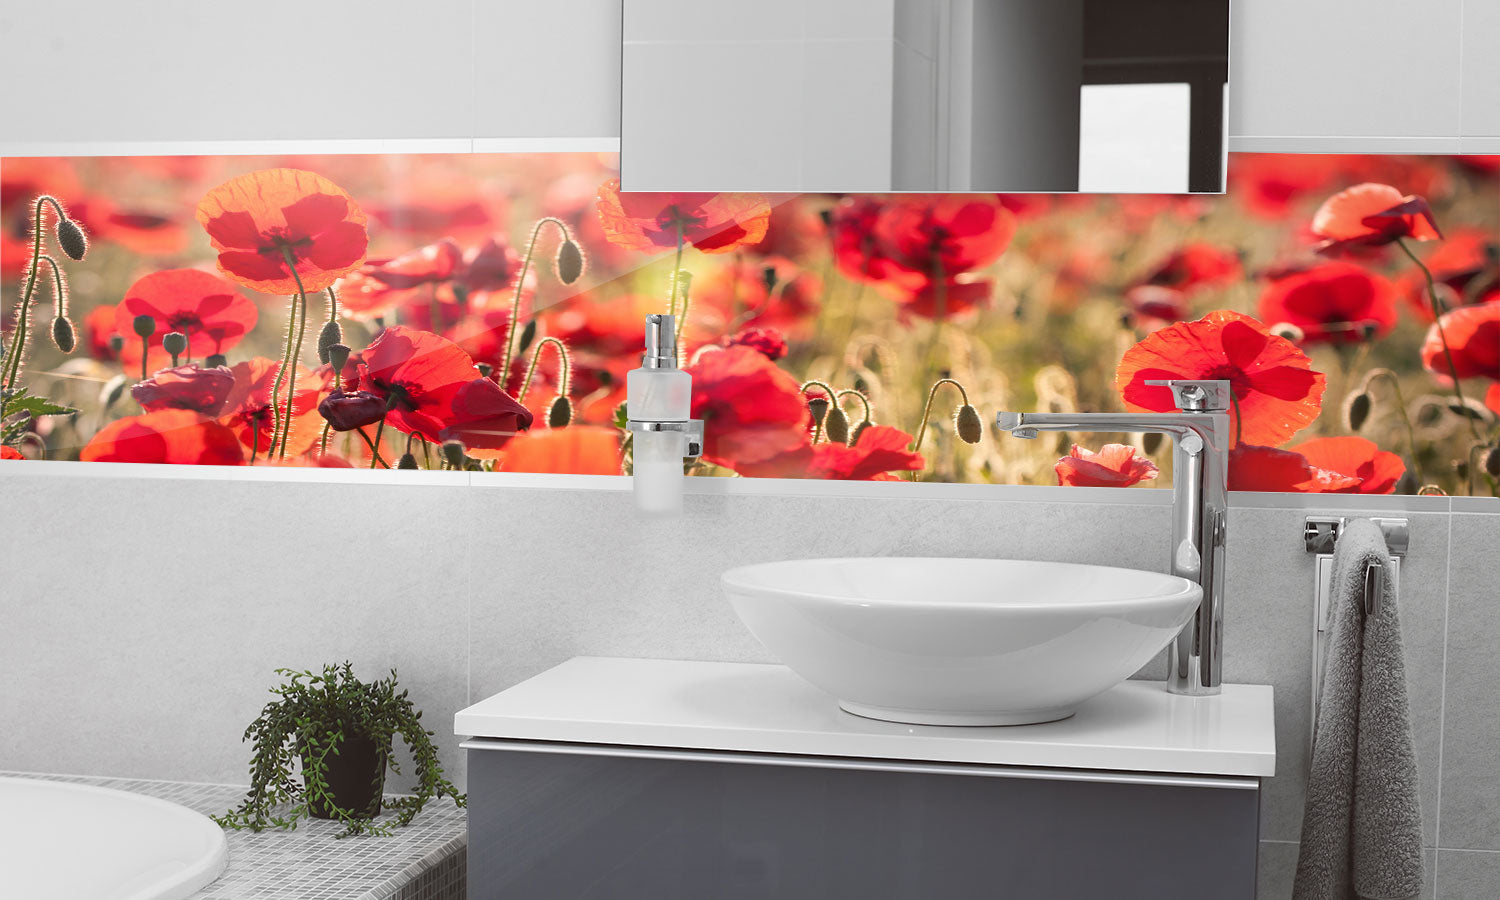 Stakla za kuhinje   Tuscan red poppies -  Stakleni / PVC ploče / Pleksiglas -  sa printom za kuhinju, Zidne obloge PKU299